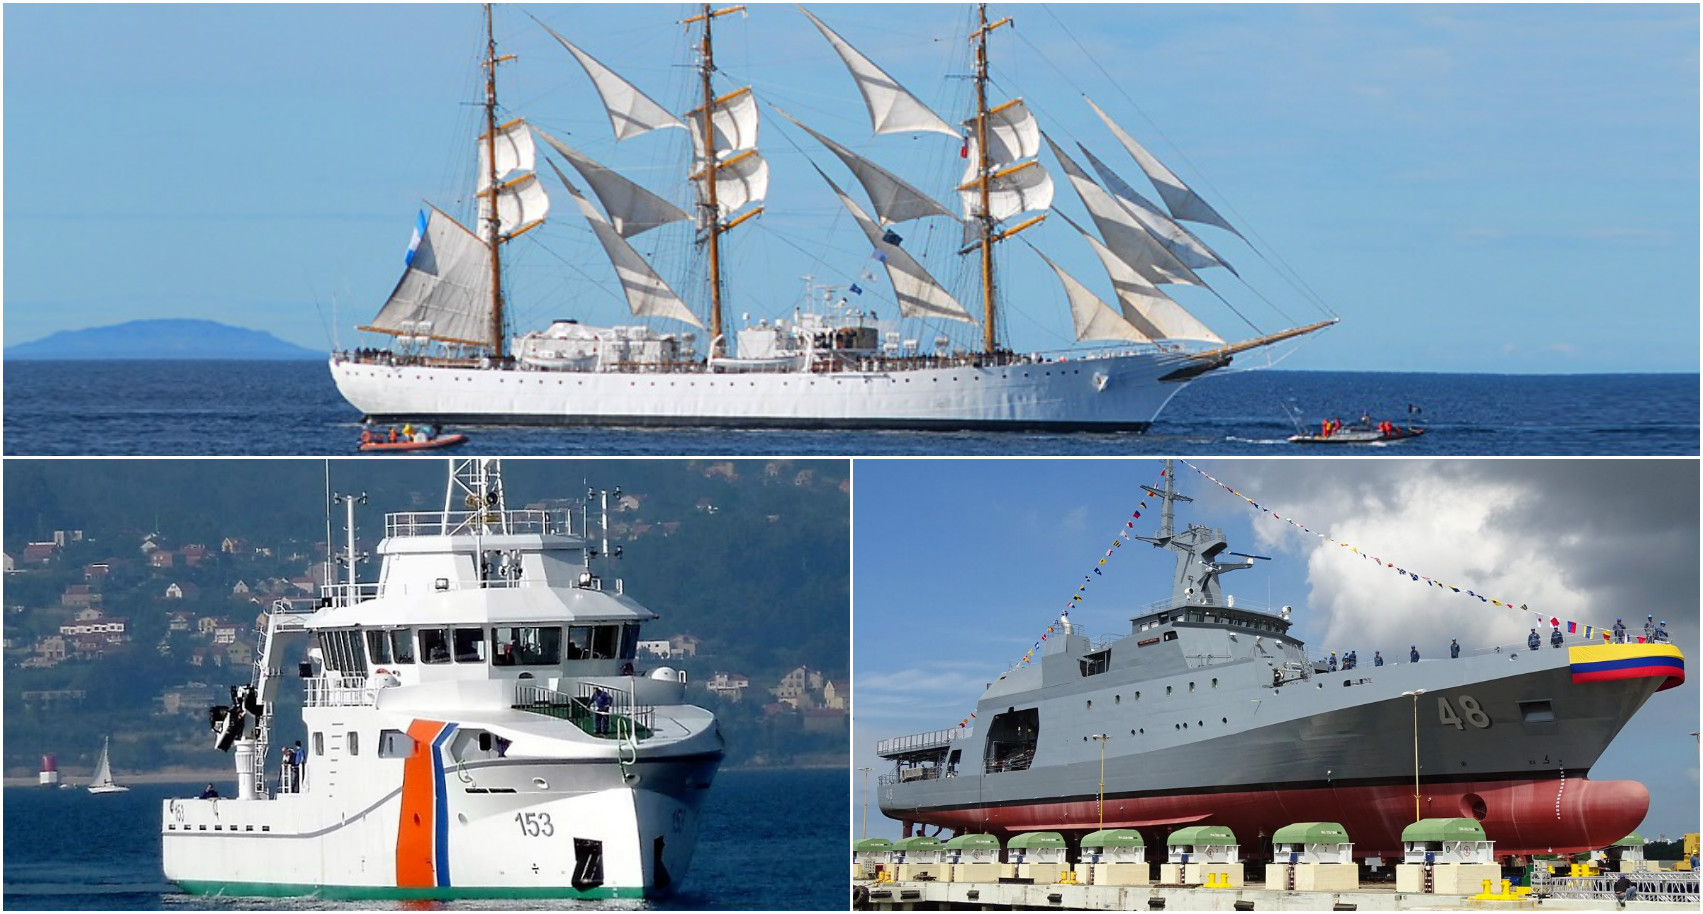 Tres nuevos veleros harán parte del evento “Velas Santa Marta 2018”